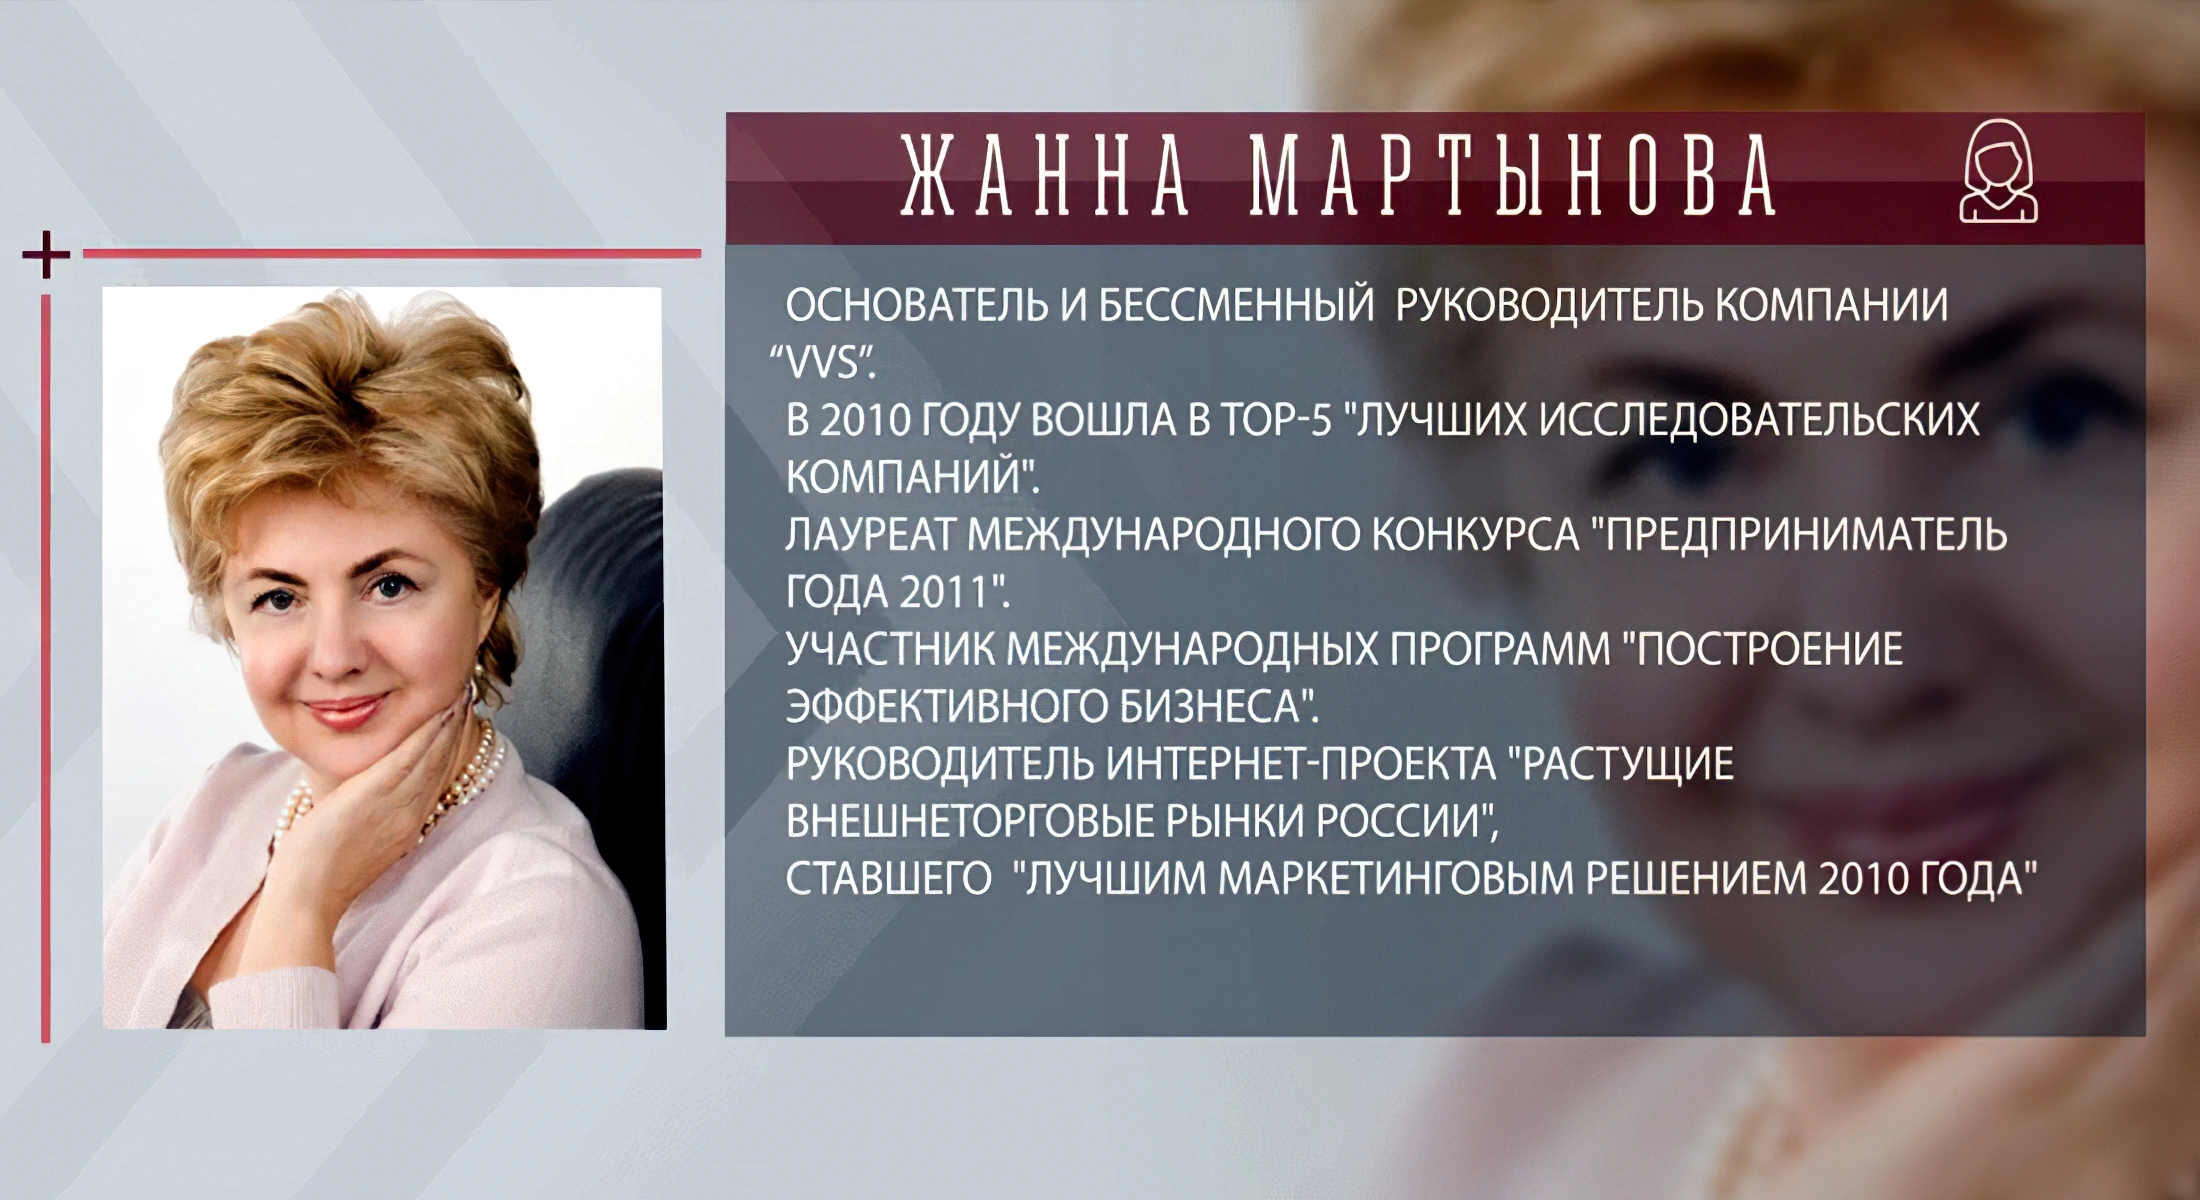 Жанна Мартынова - основательница и генеральной директор компании «ВладВнешСервис»